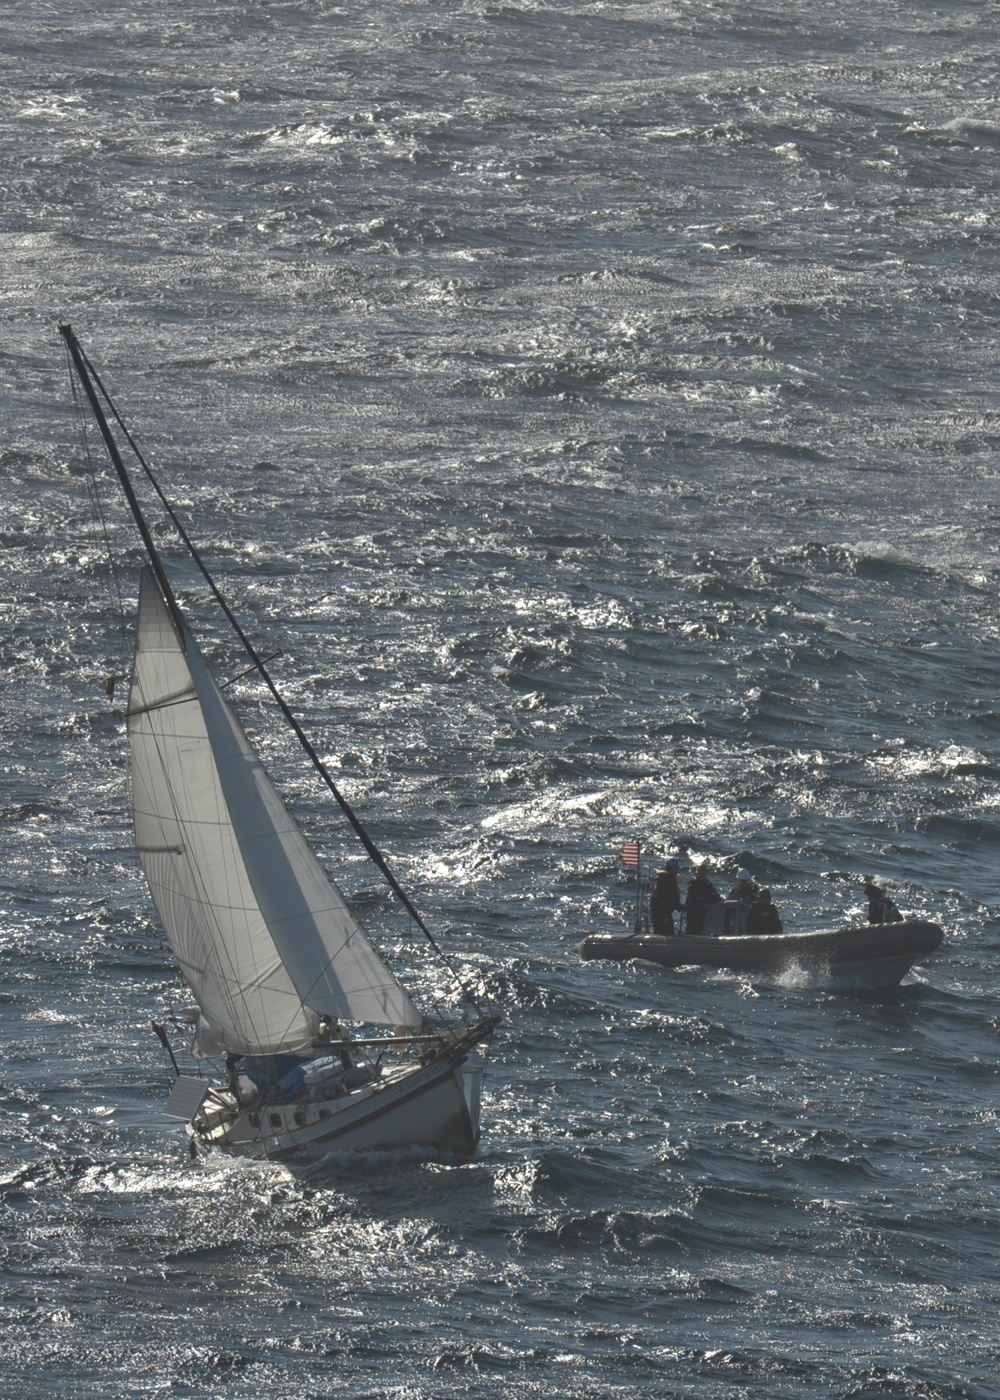 Sailors respond to distress call